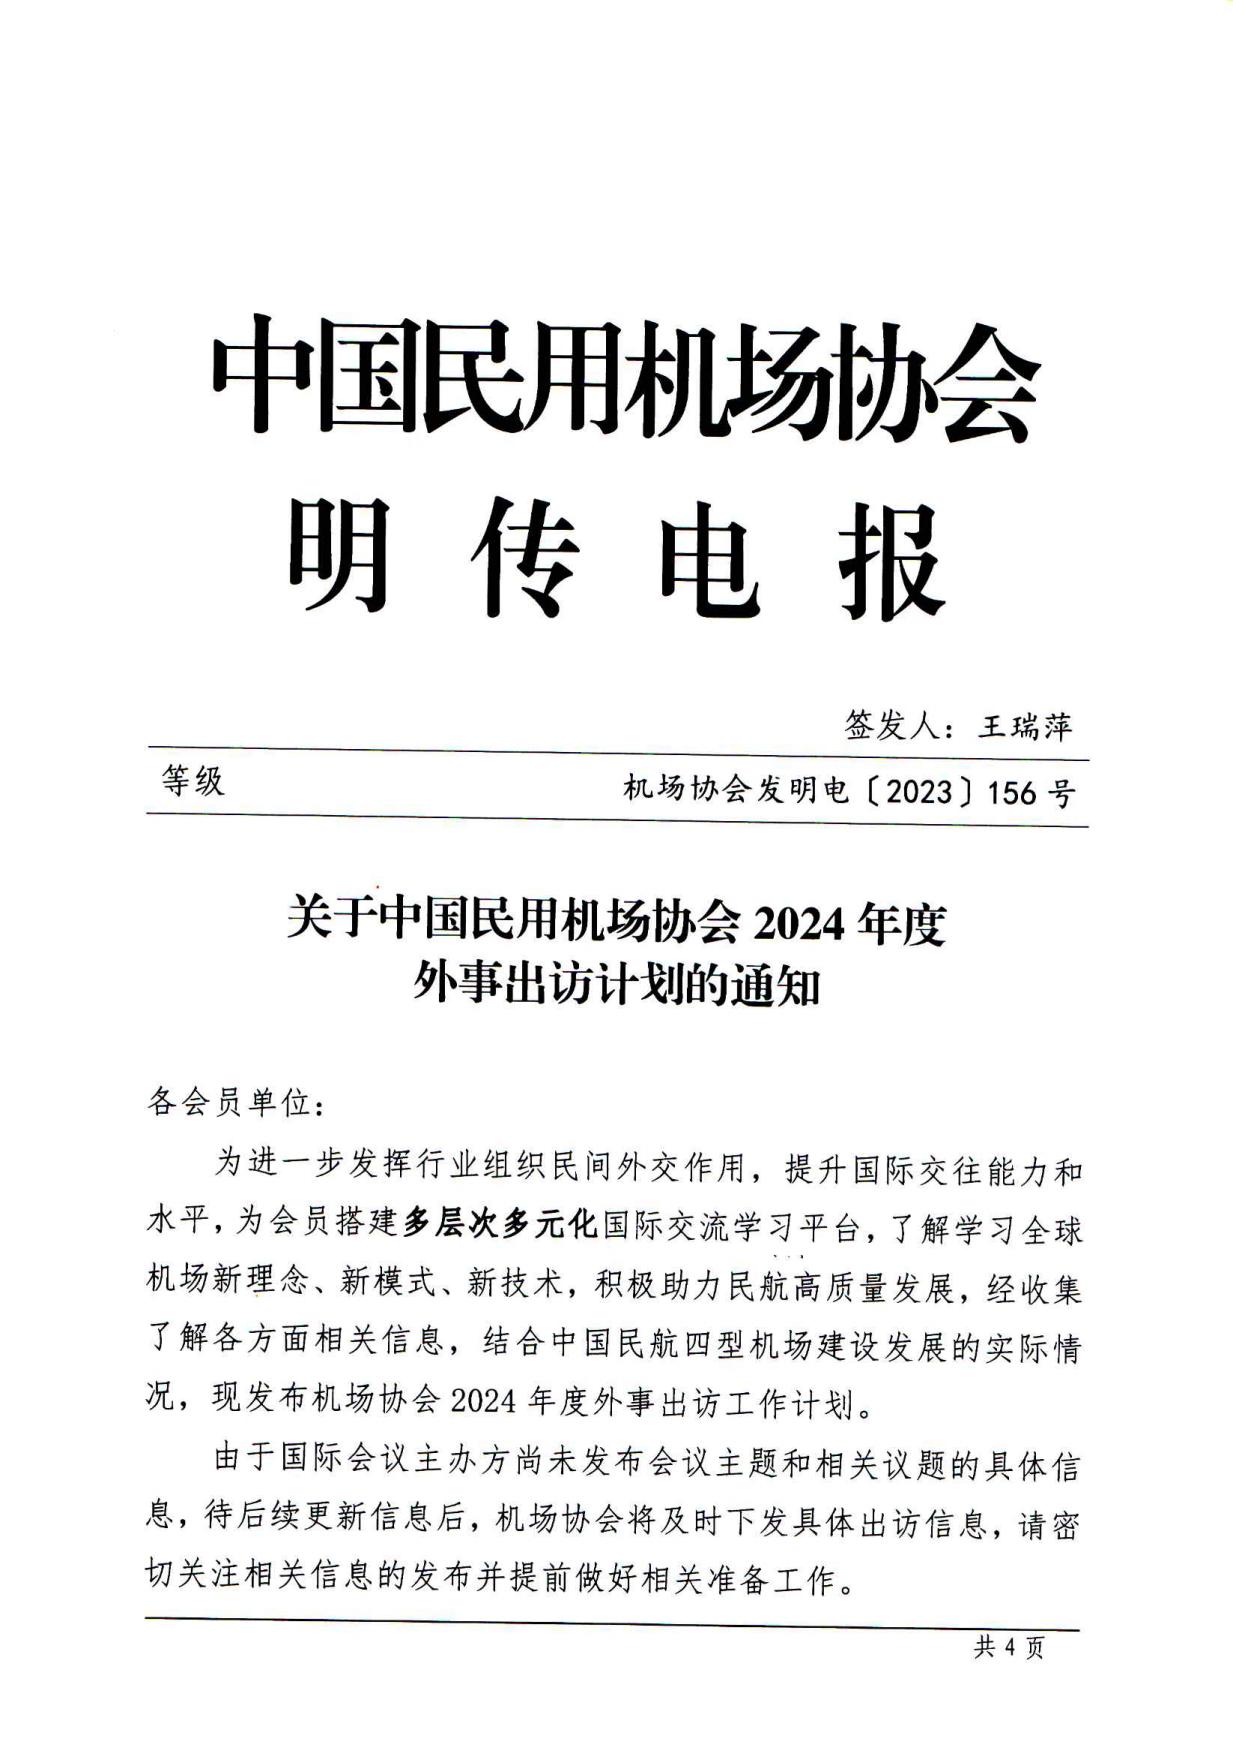 关于中国民用机场协会2024年度外事出访计划的通知_page1.jpg